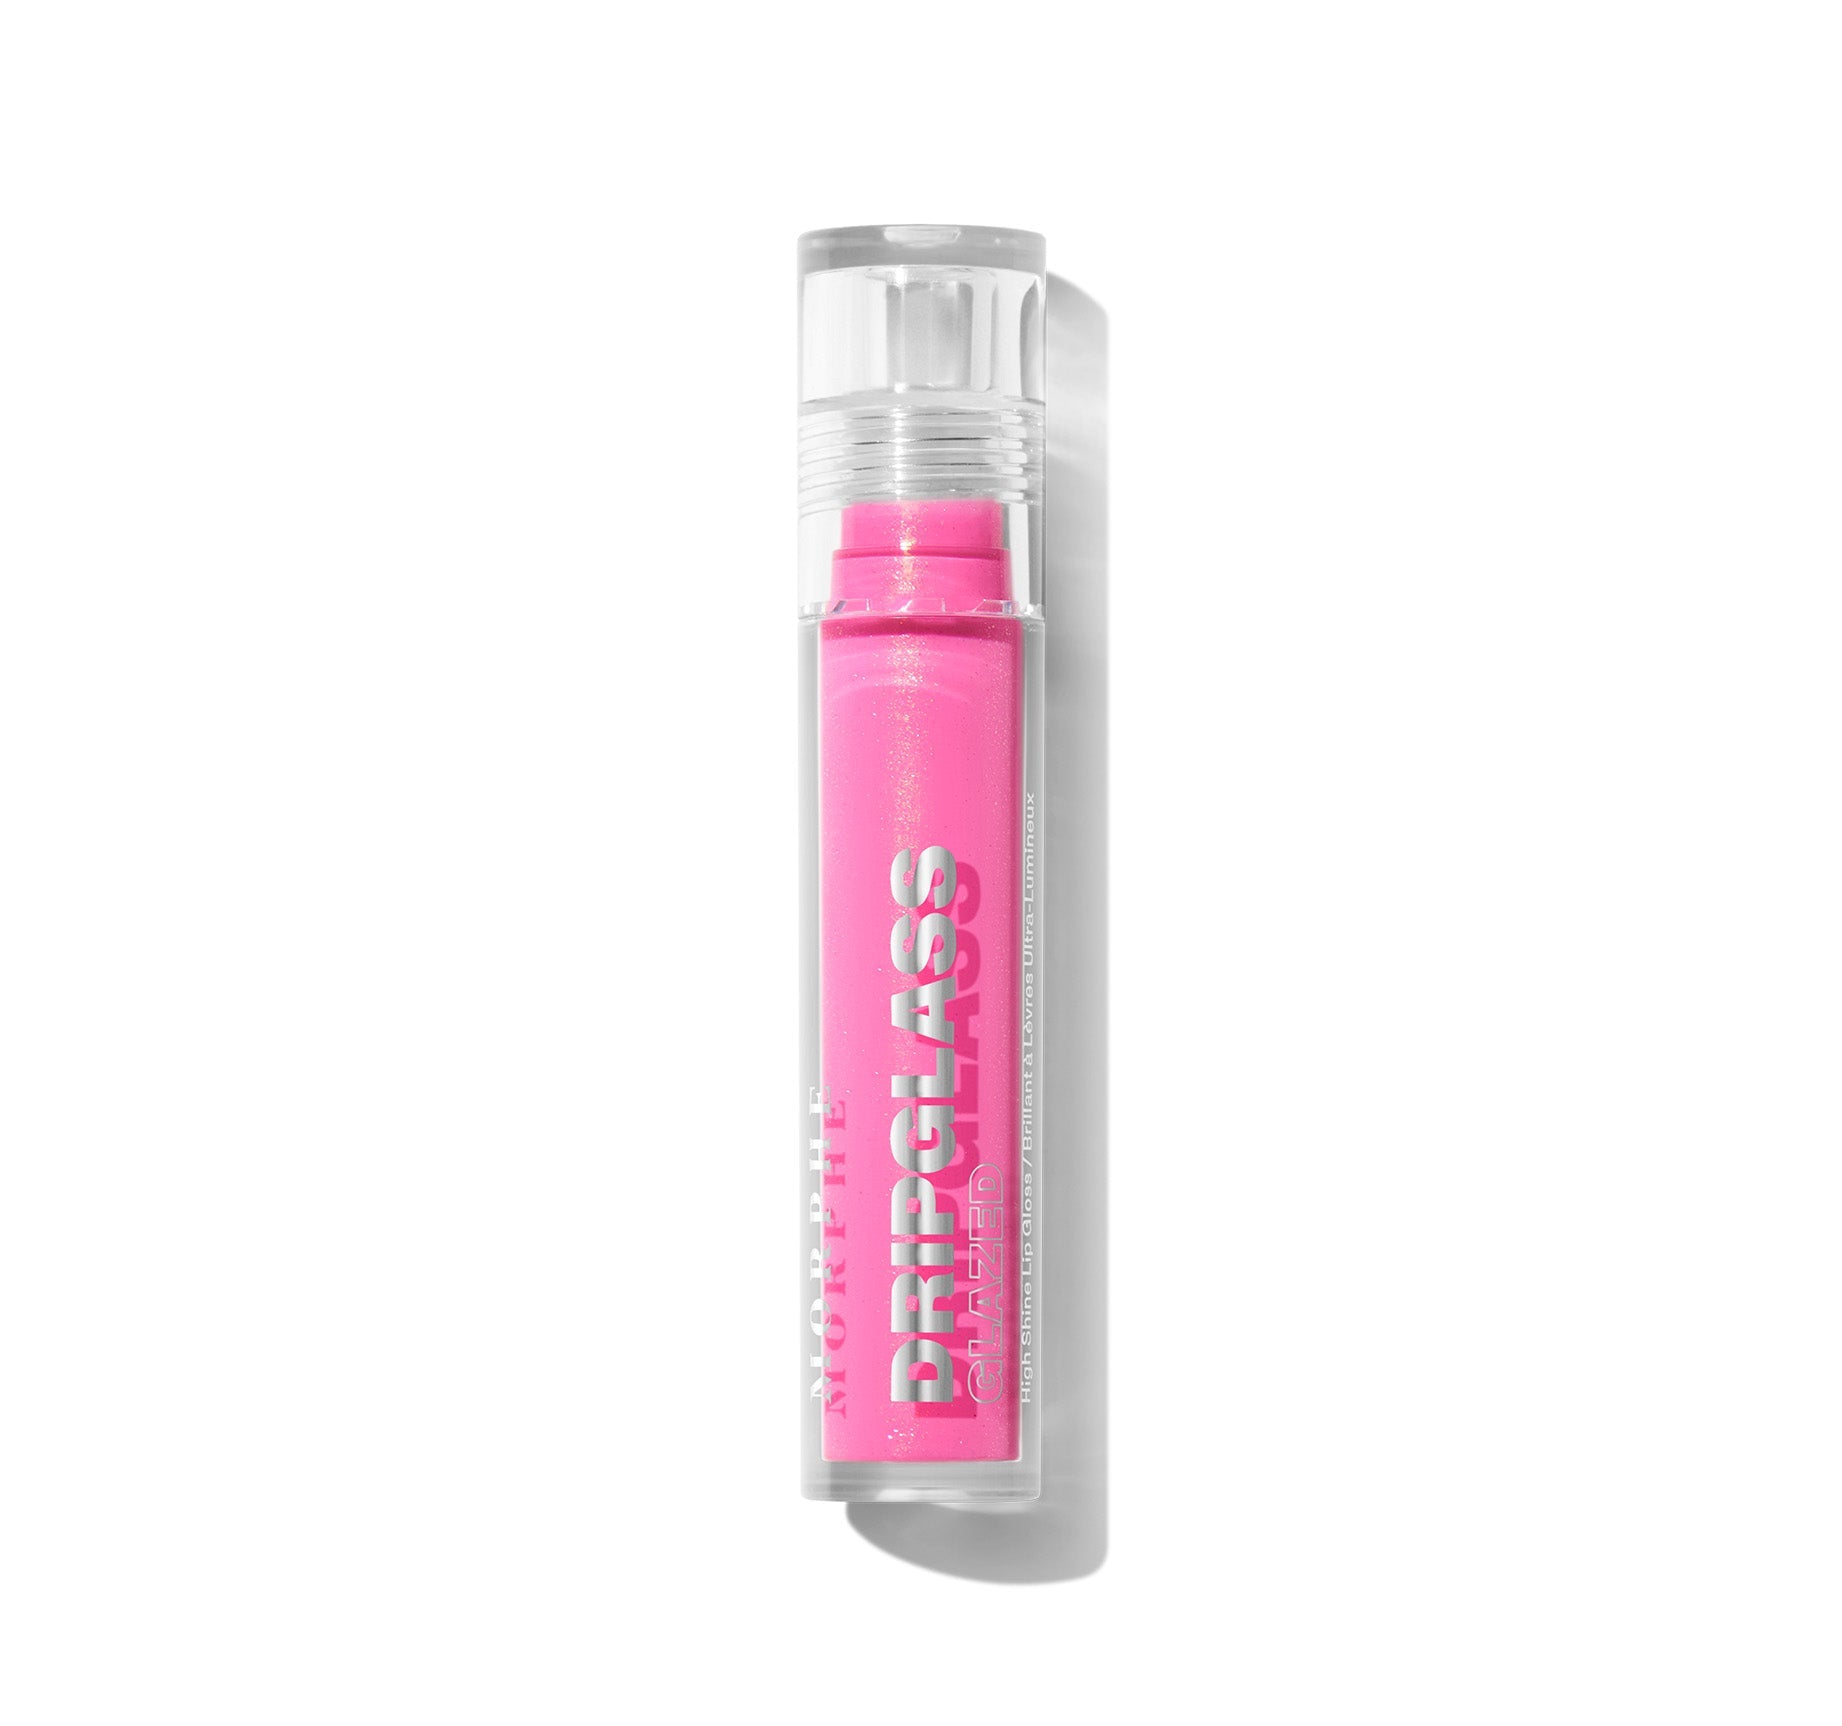 Dripglass Glazed High Shine Lip Gloss - Glint Of Pink - Image 6